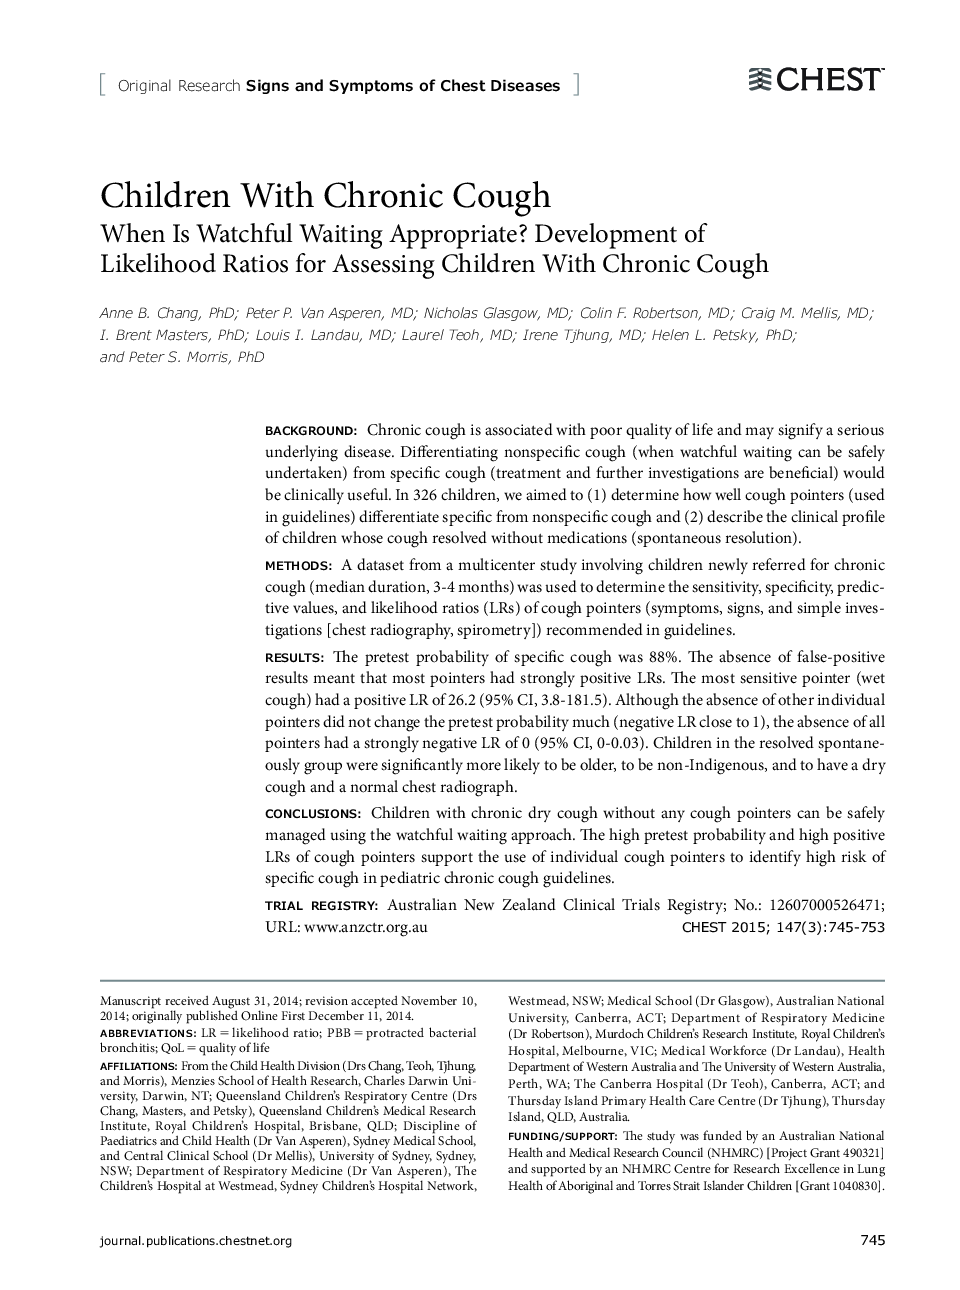 کودکان مبتلا به سرفه مزمن: زمانی که مراقب بودن در انتظار بودن مناسب است؟ توسعه معیارهای ارزیابی کودکان مبتلا به سرفه مزمن 